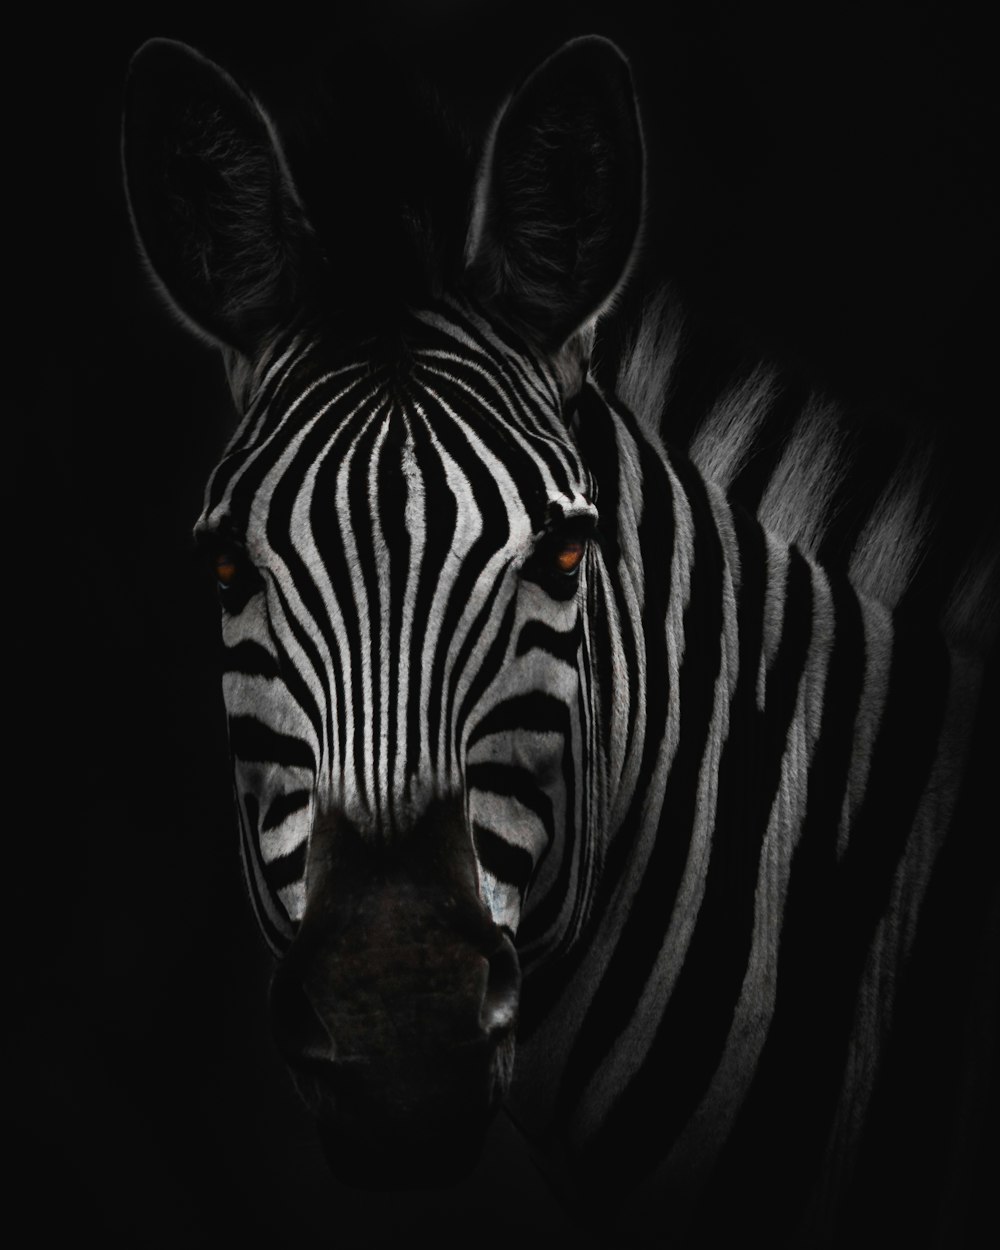 zebra in close-up photography photo – Free Animal Image on Unsplash